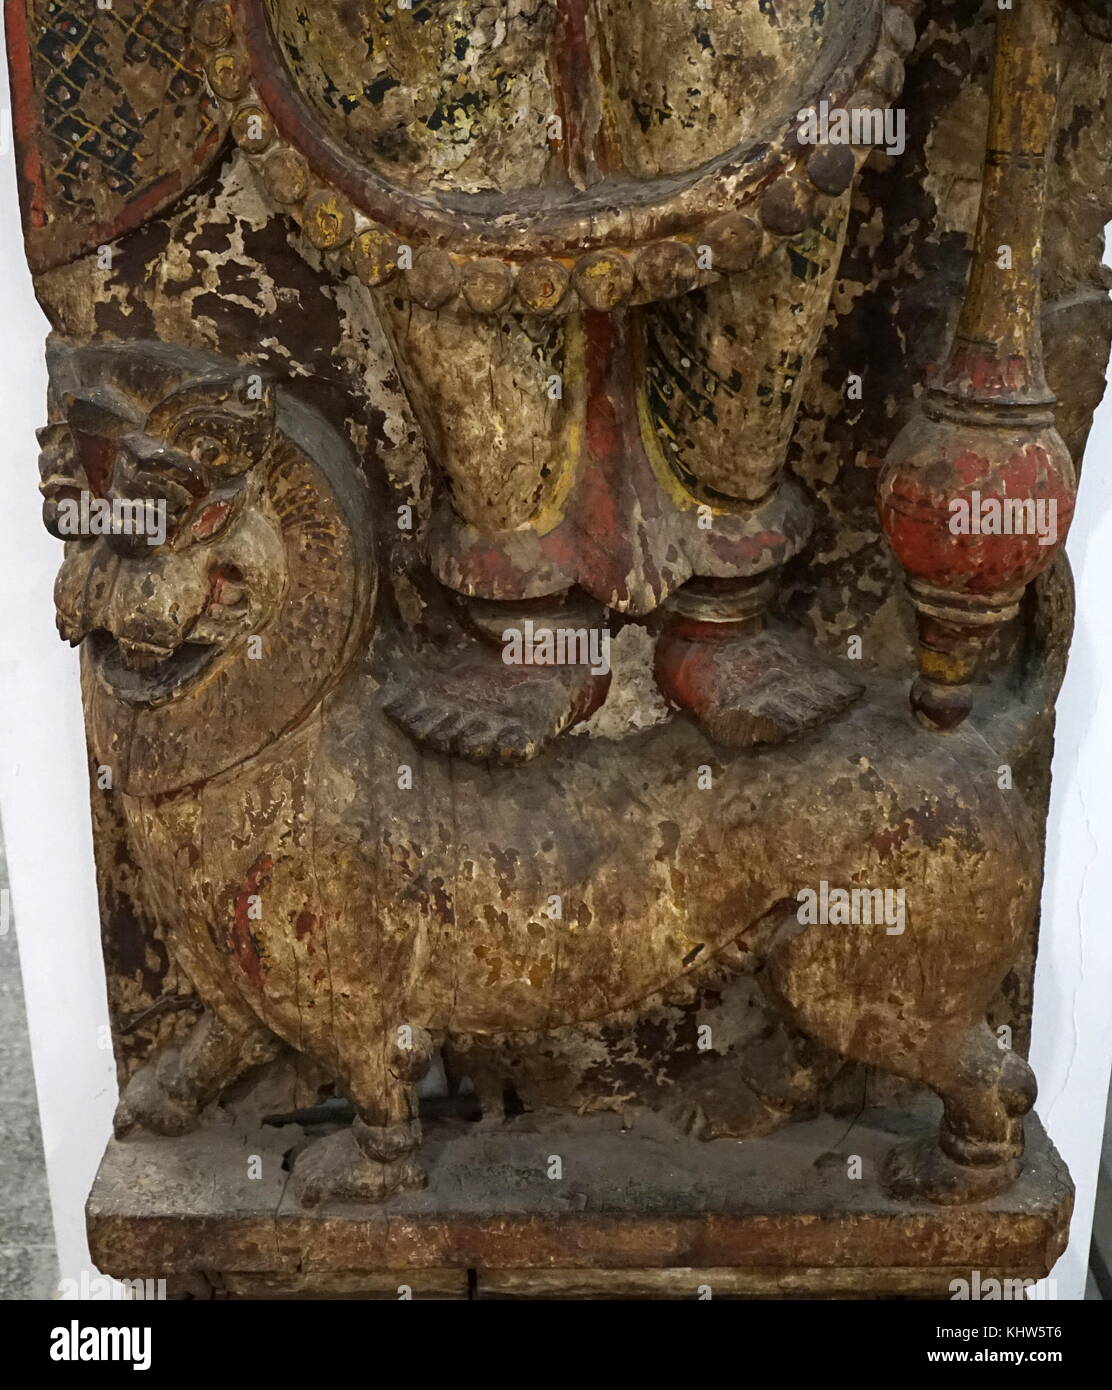 (Detail) Holzskulptur, Yama, die im Hinduismus als der Herr des Todes bekannt. Vom 19. Jahrhundert Stockfoto